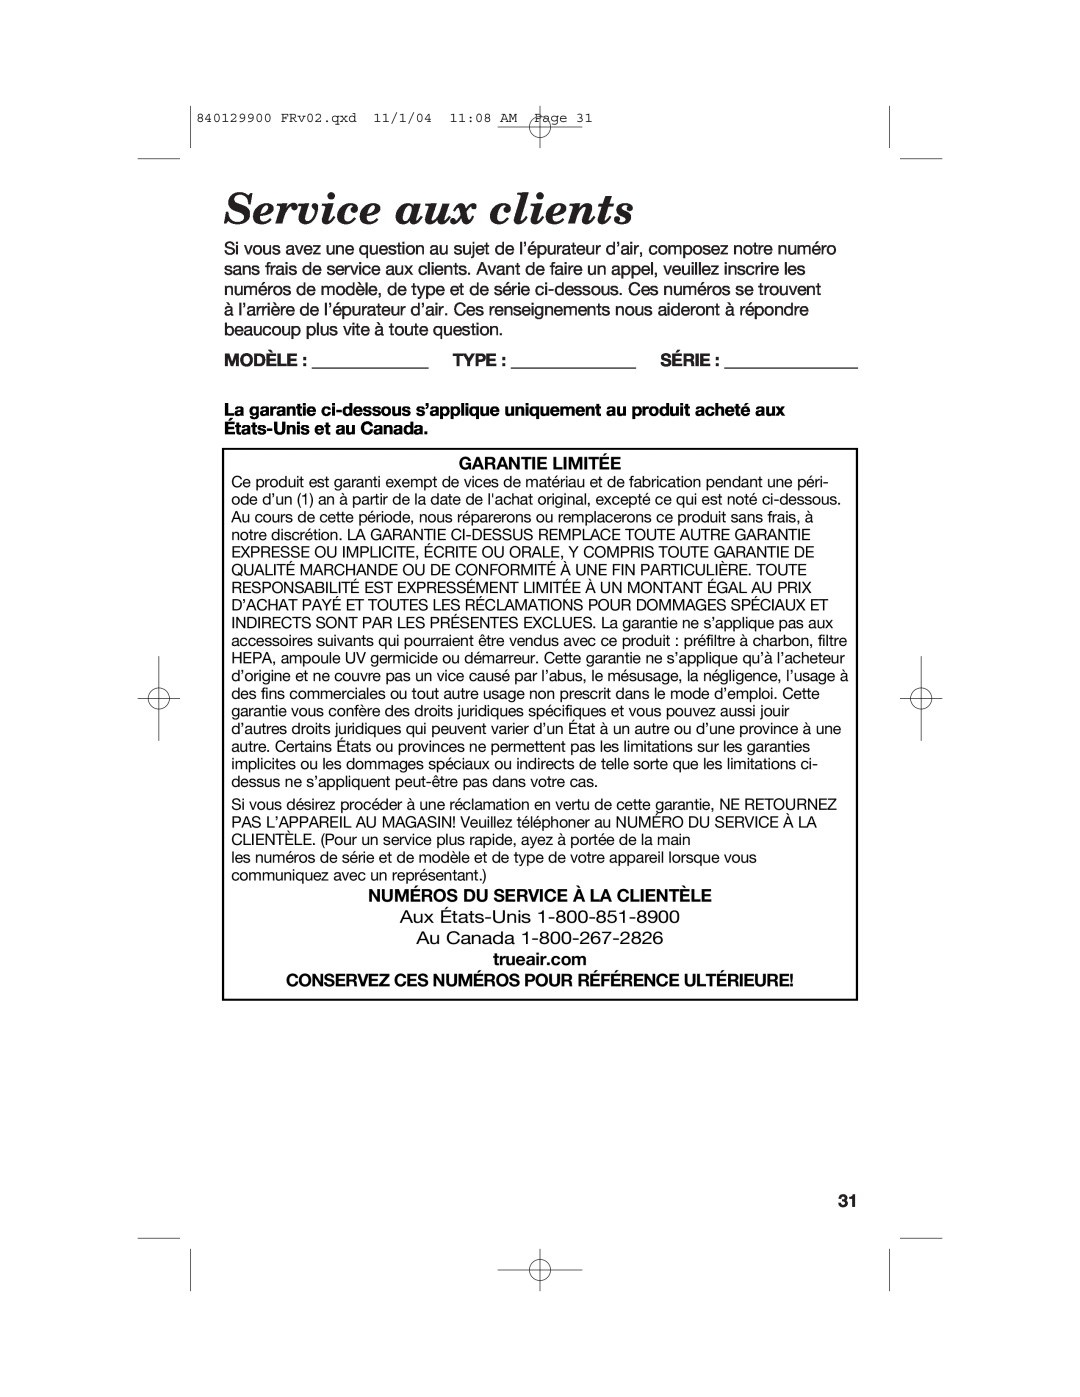 Hamilton Beach 04160, 04162, 04161 manual Service aux clients, Garantie Limitée, Numéros Du Service À La Clientèle 